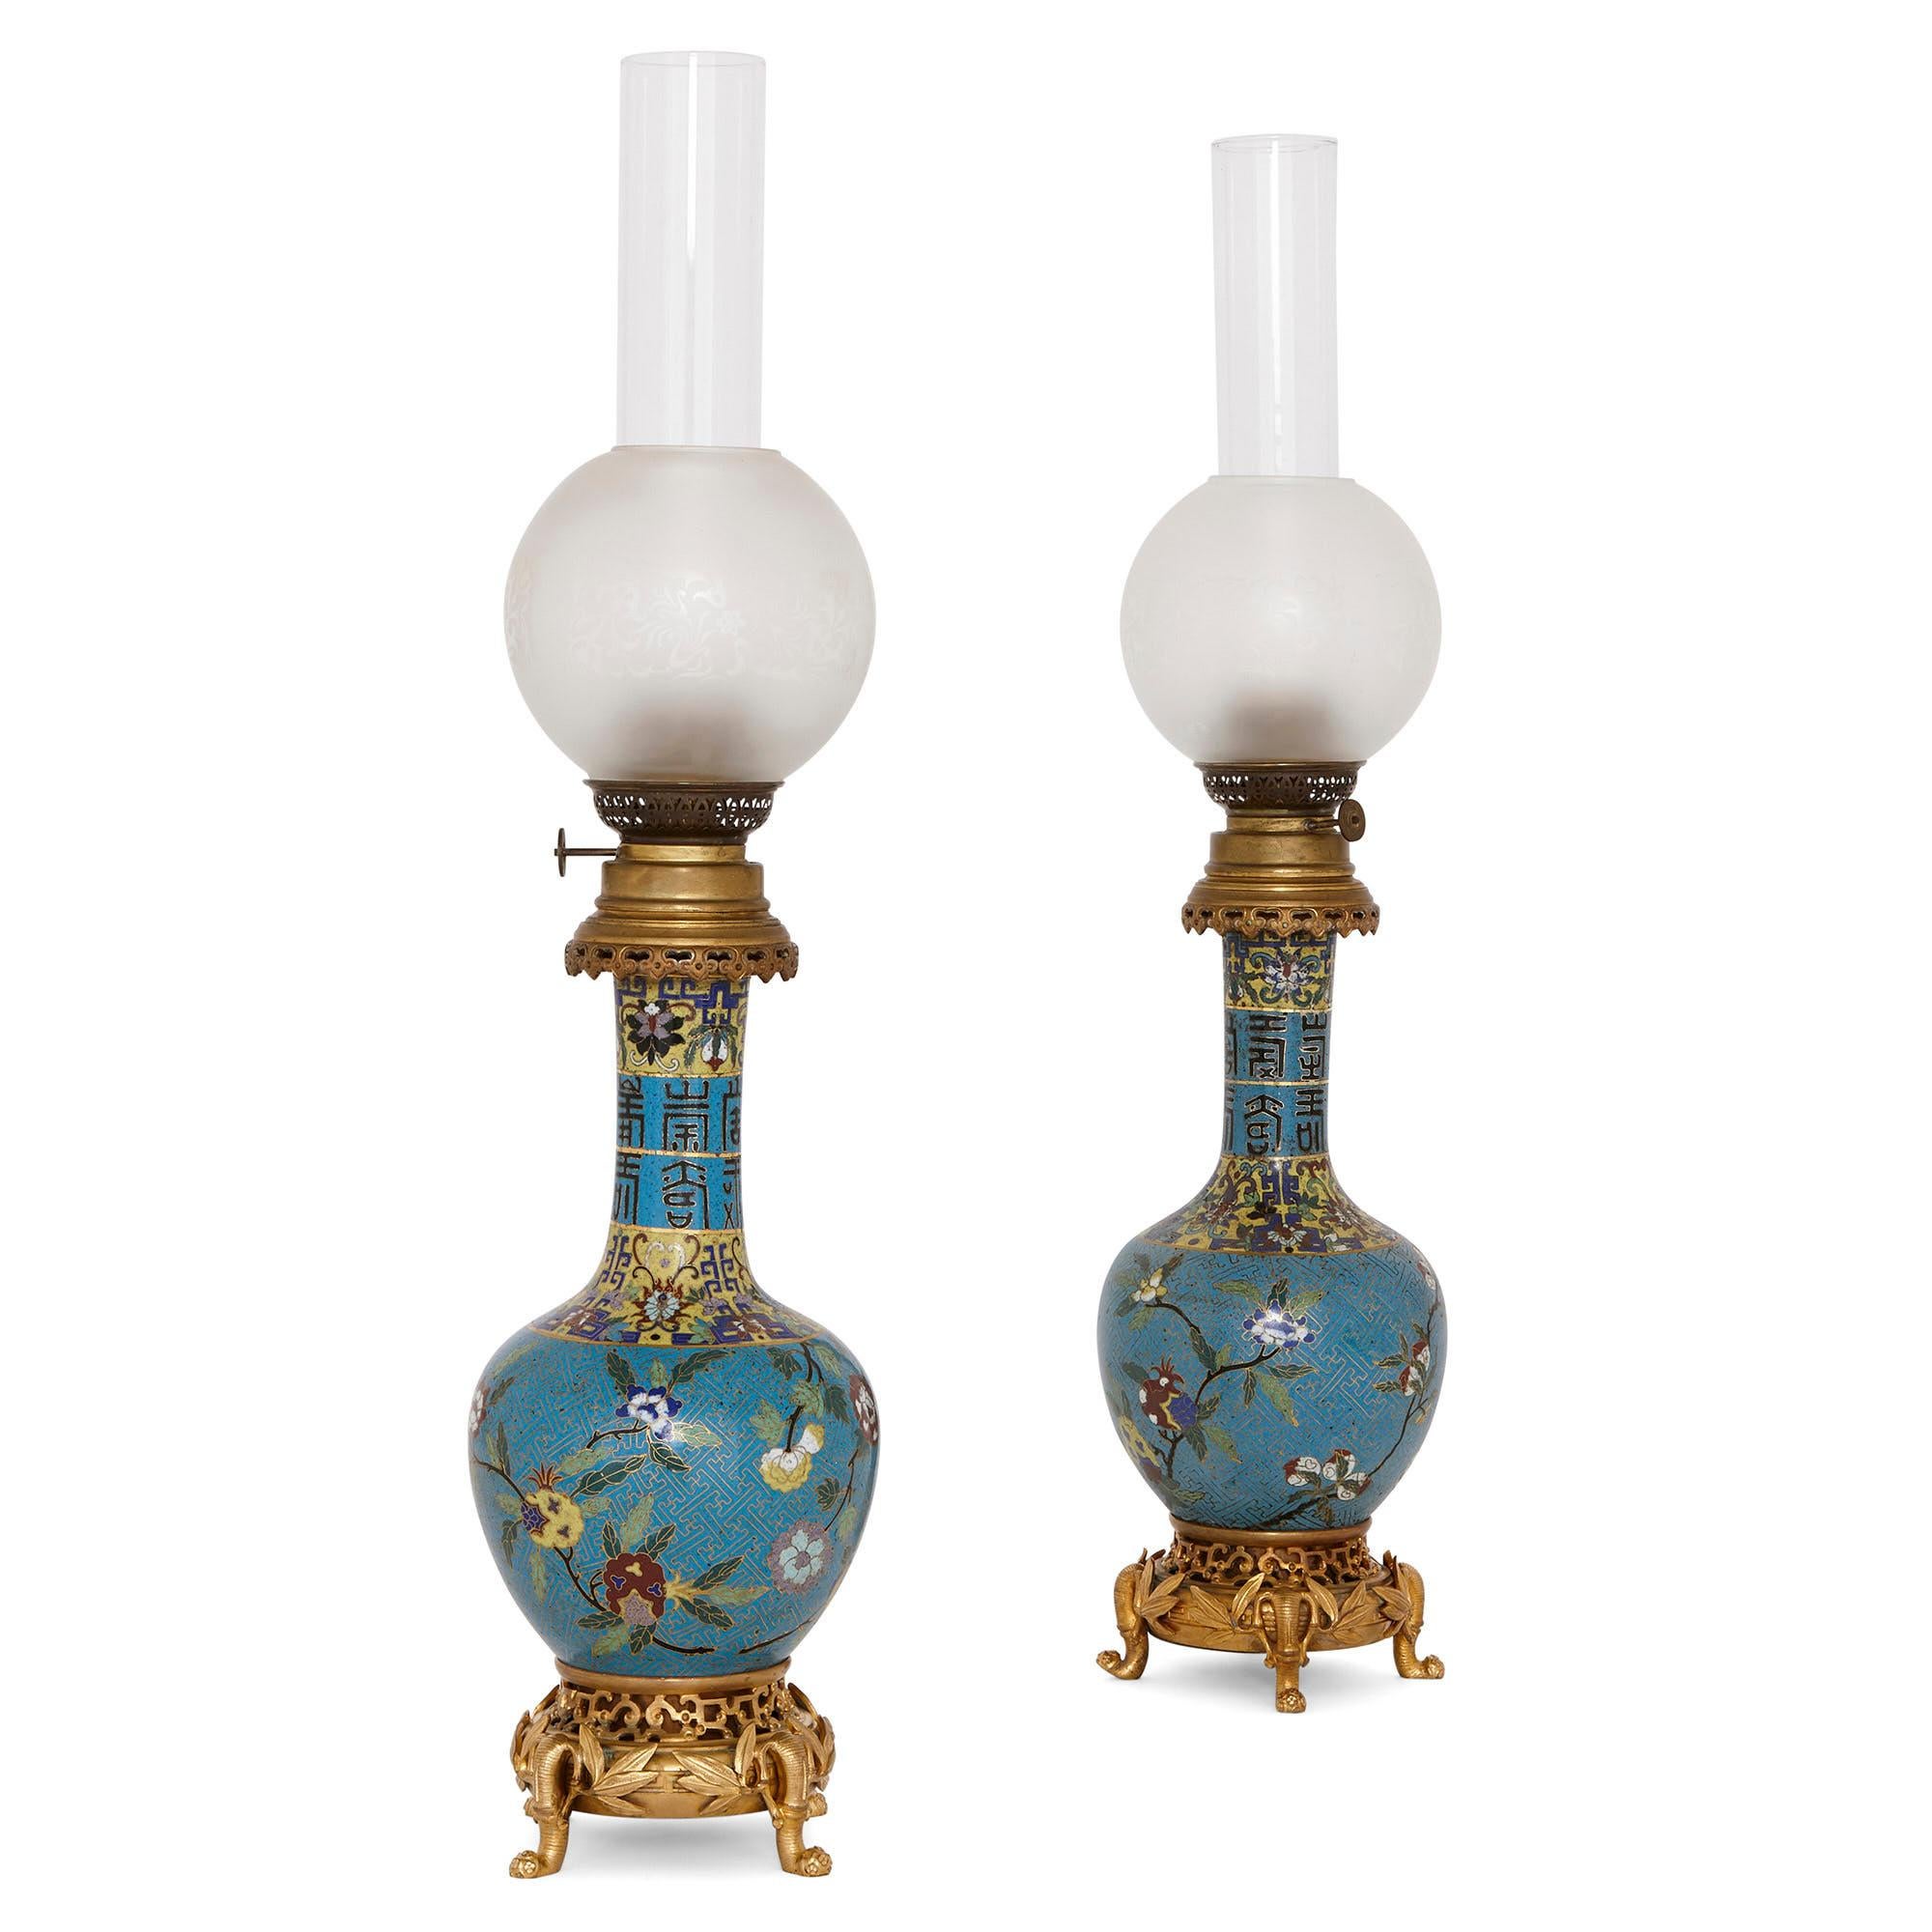 Diese schönen Öllampen wurden Ende des 19. Jahrhunderts in Frankreich hergestellt. Sie sind in einem wunderbaren Chinoiserie-Stil gestaltet - eine europäische Interpretation chinesischer dekorativer Kunst. 

Die Lampen sind baugleich. Jede Leuchte